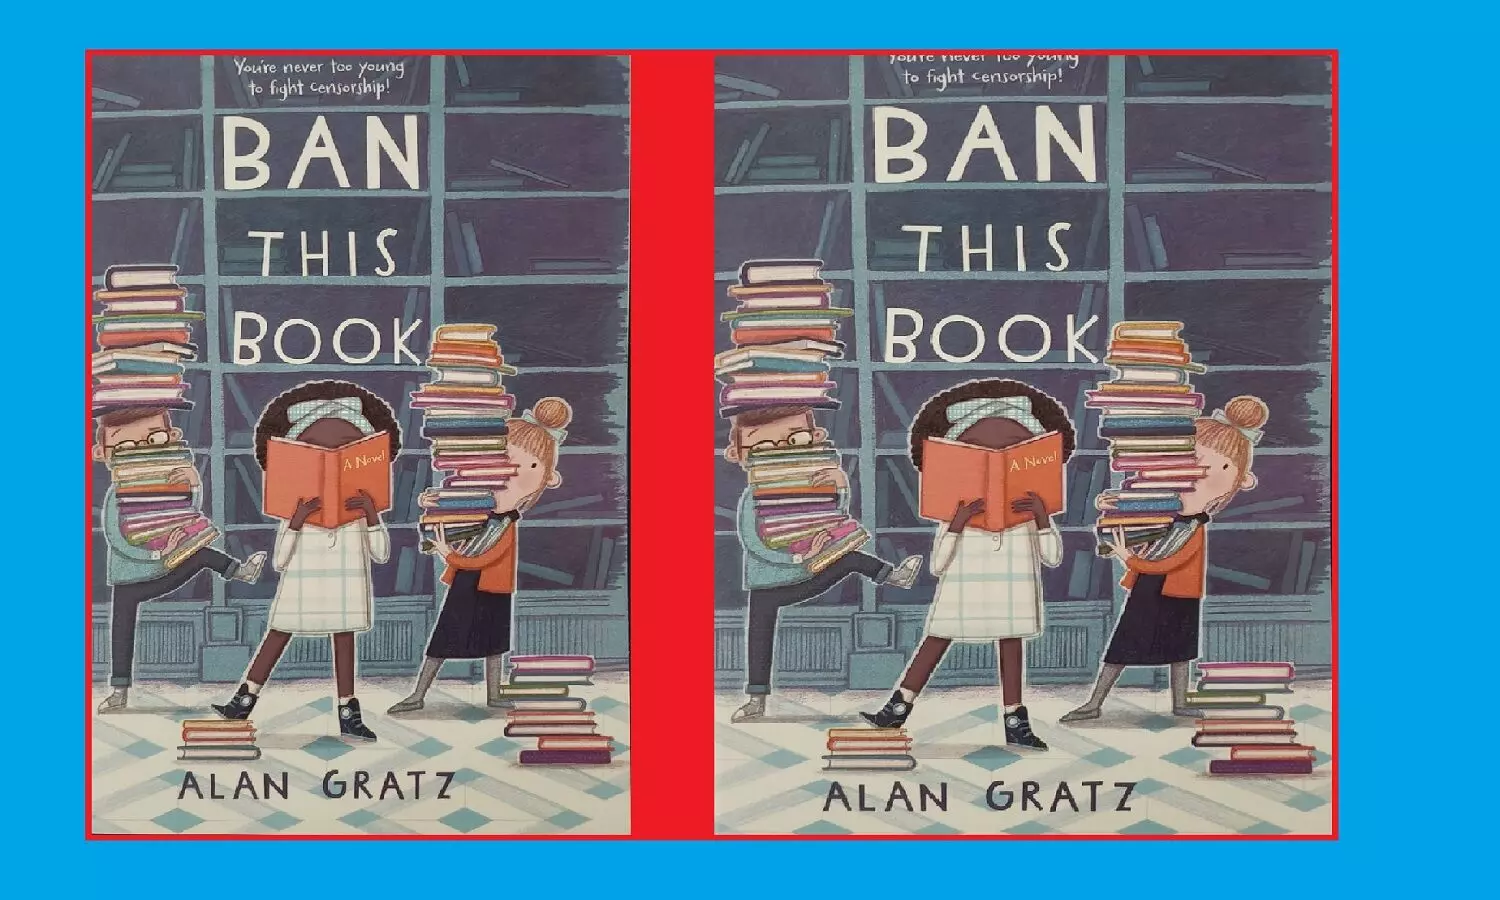 10 से भी ज्यादा प्रतिष्ठित पुरस्कार पाने वाले बाल उपन्यास “बैन दिस बुक” को अमेरिकी सरकार ने किया प्रतिबंधित !